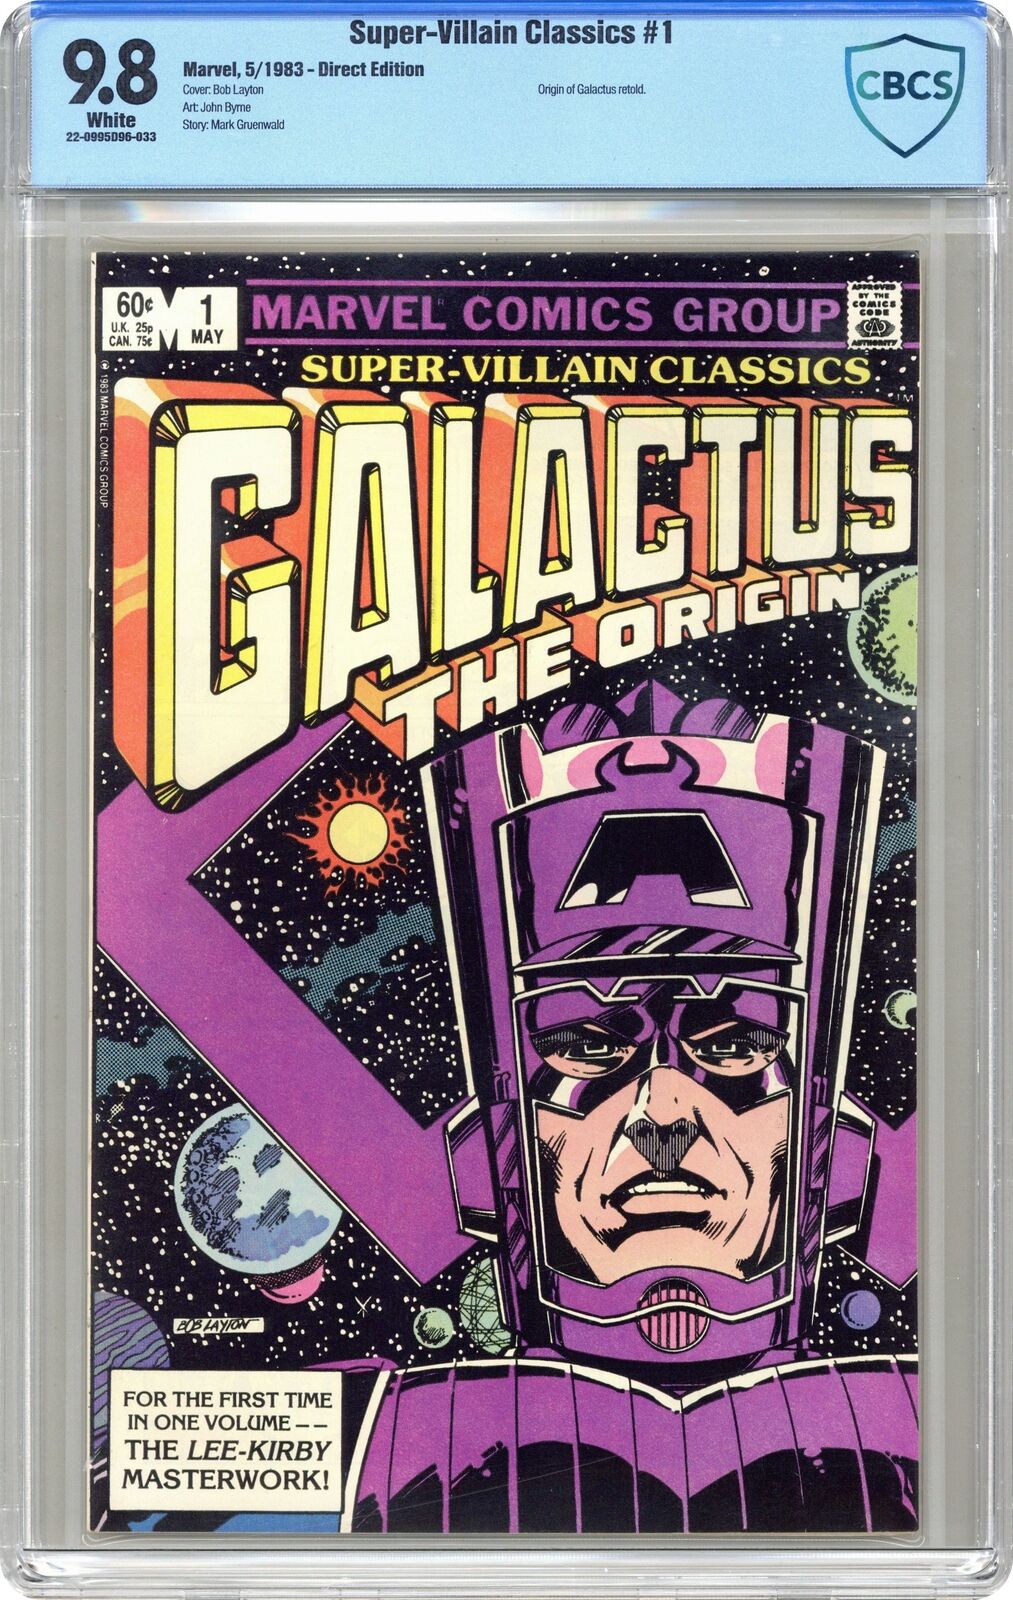 Super-Villain Classics Galactus the Origin #1 CBCS 9.8 1983 22-0995D96-033